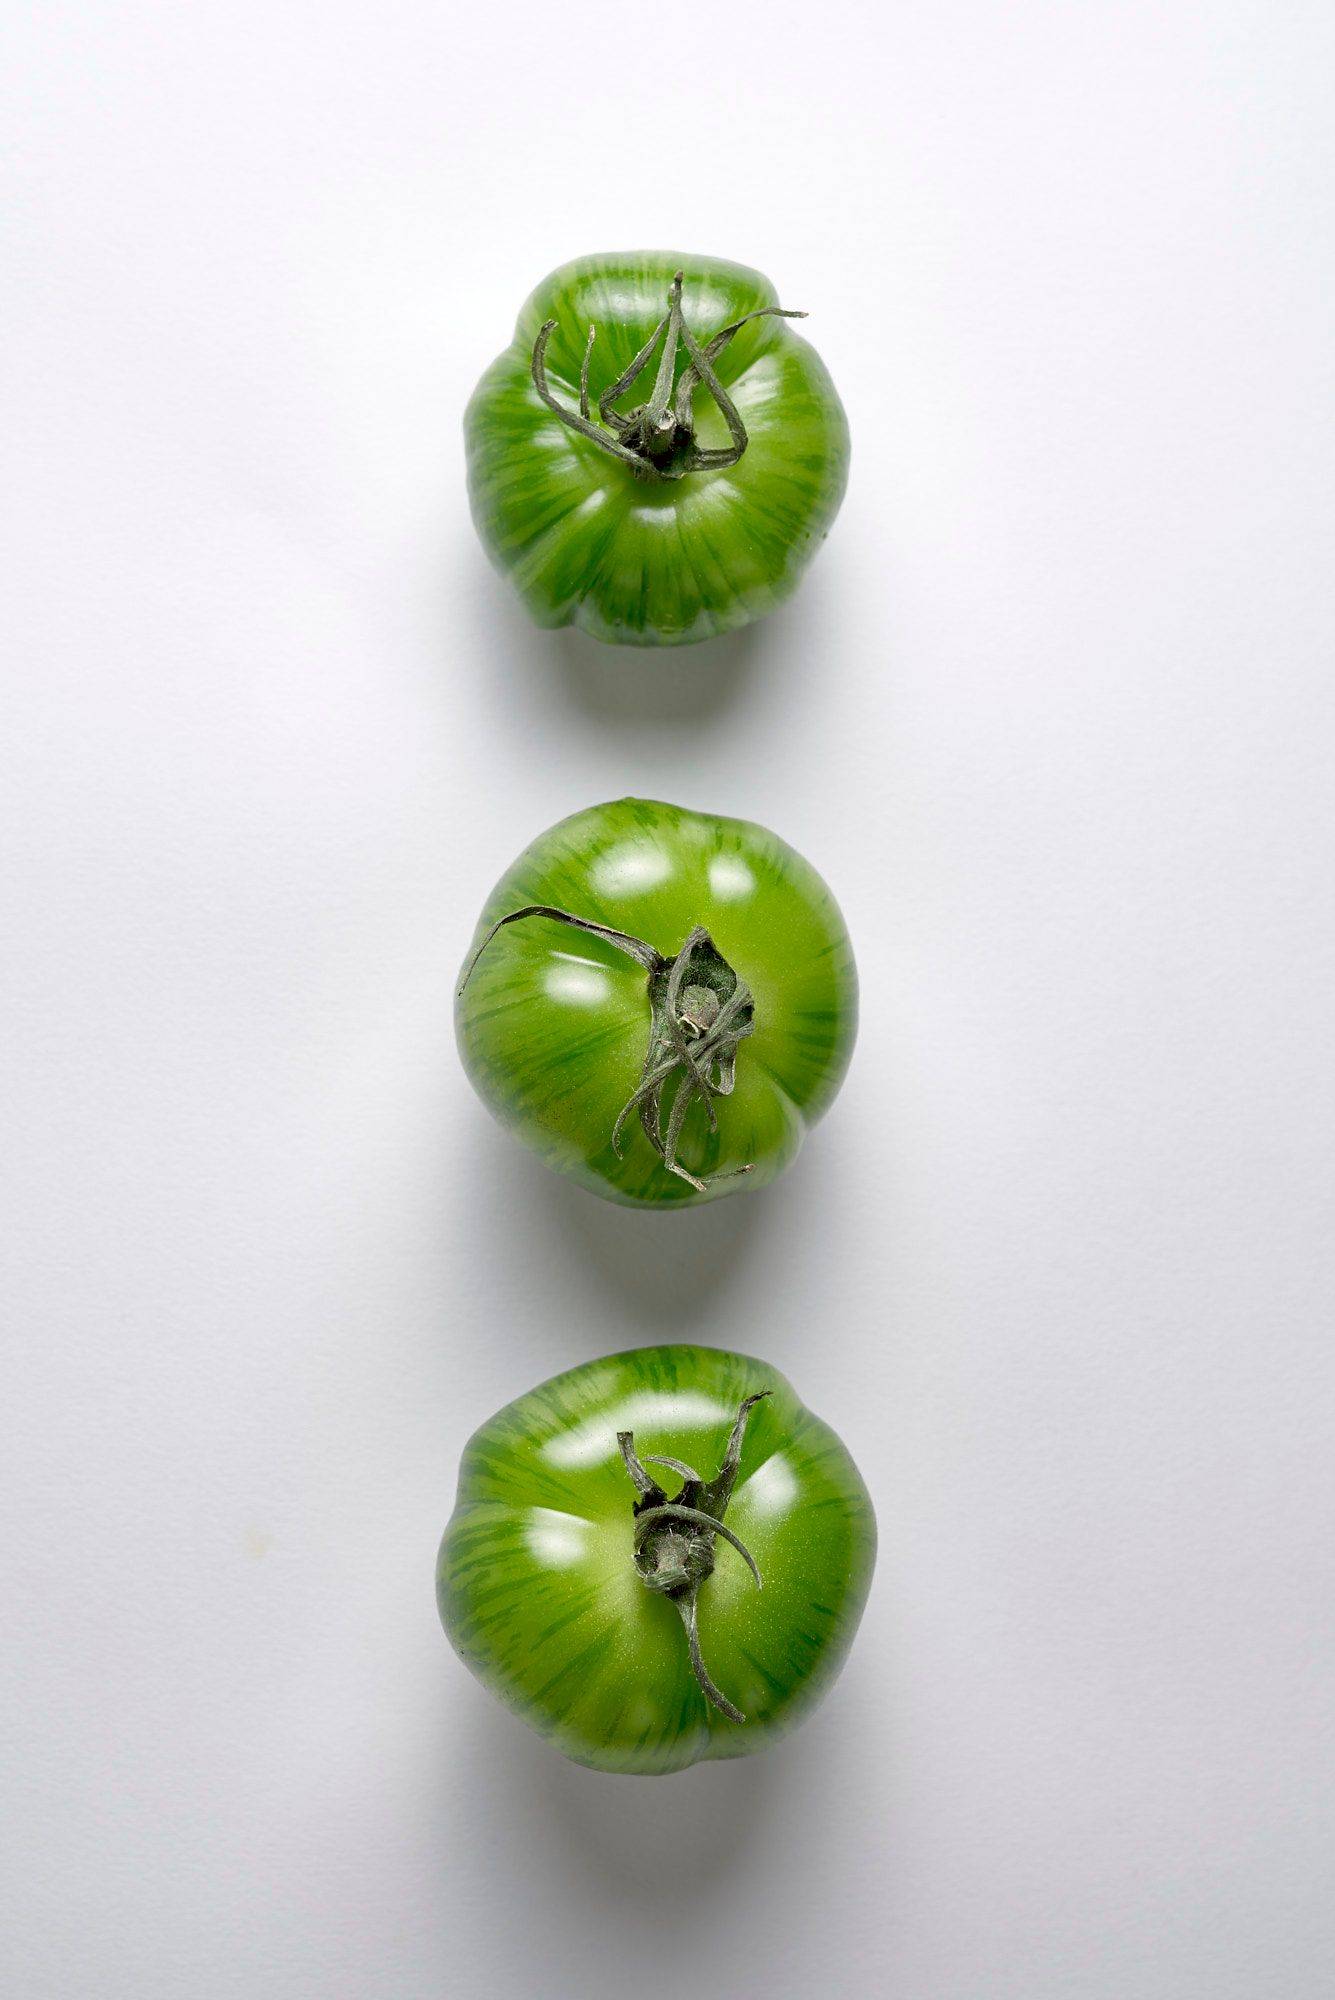 drei grüne tomaten auf weißem hintergrund